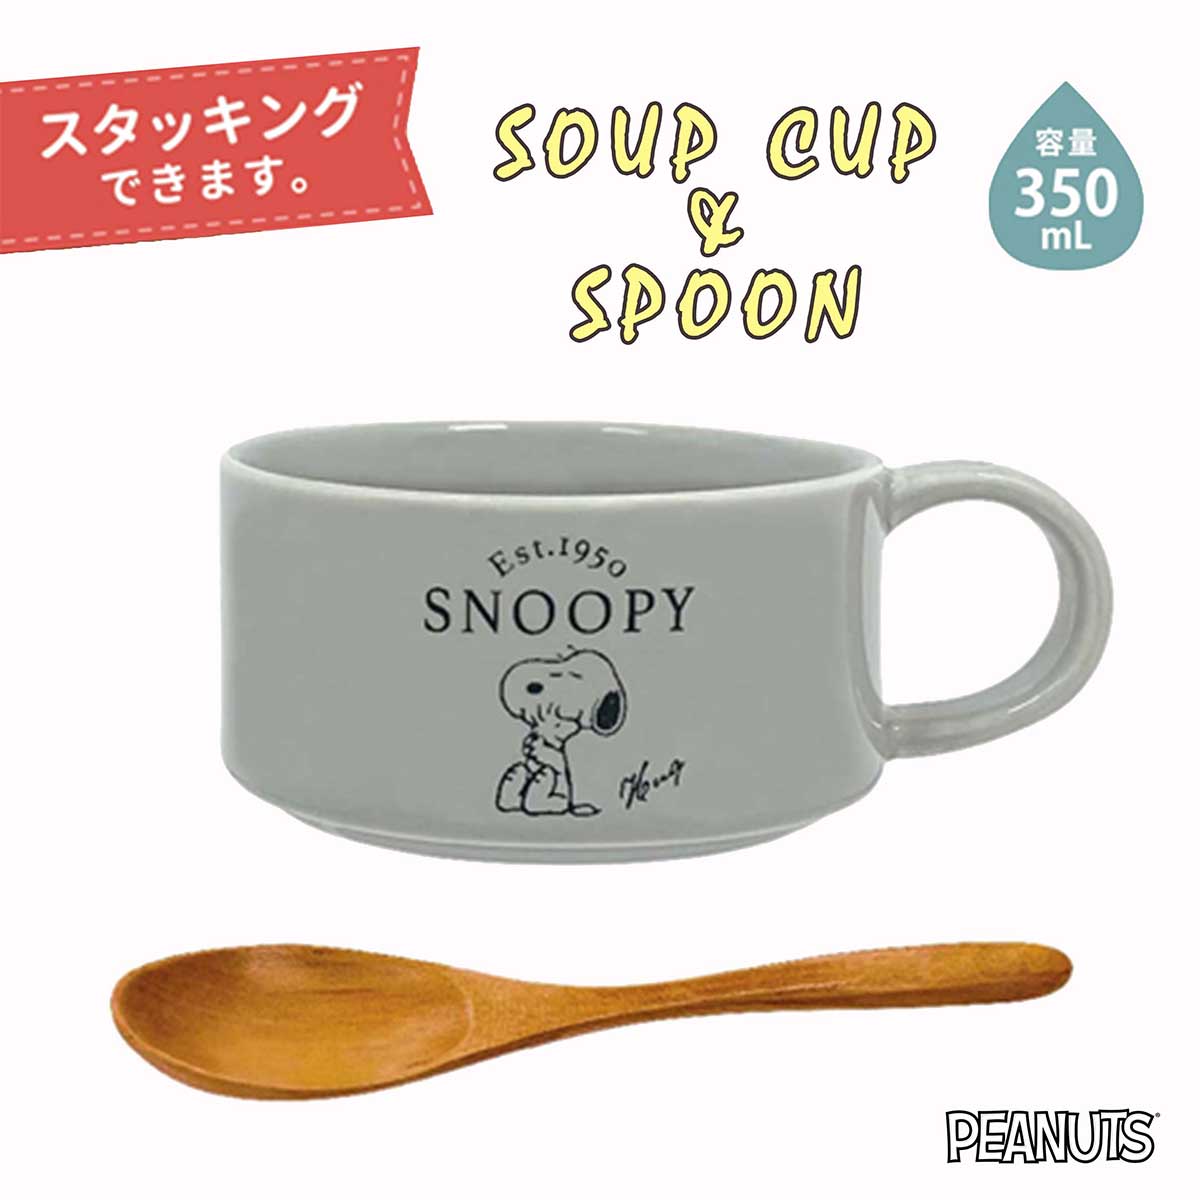 陶瓷湯杯 附木湯匙 350ml-史努比 SNOOPY PEANUTS 日本進口正版授權